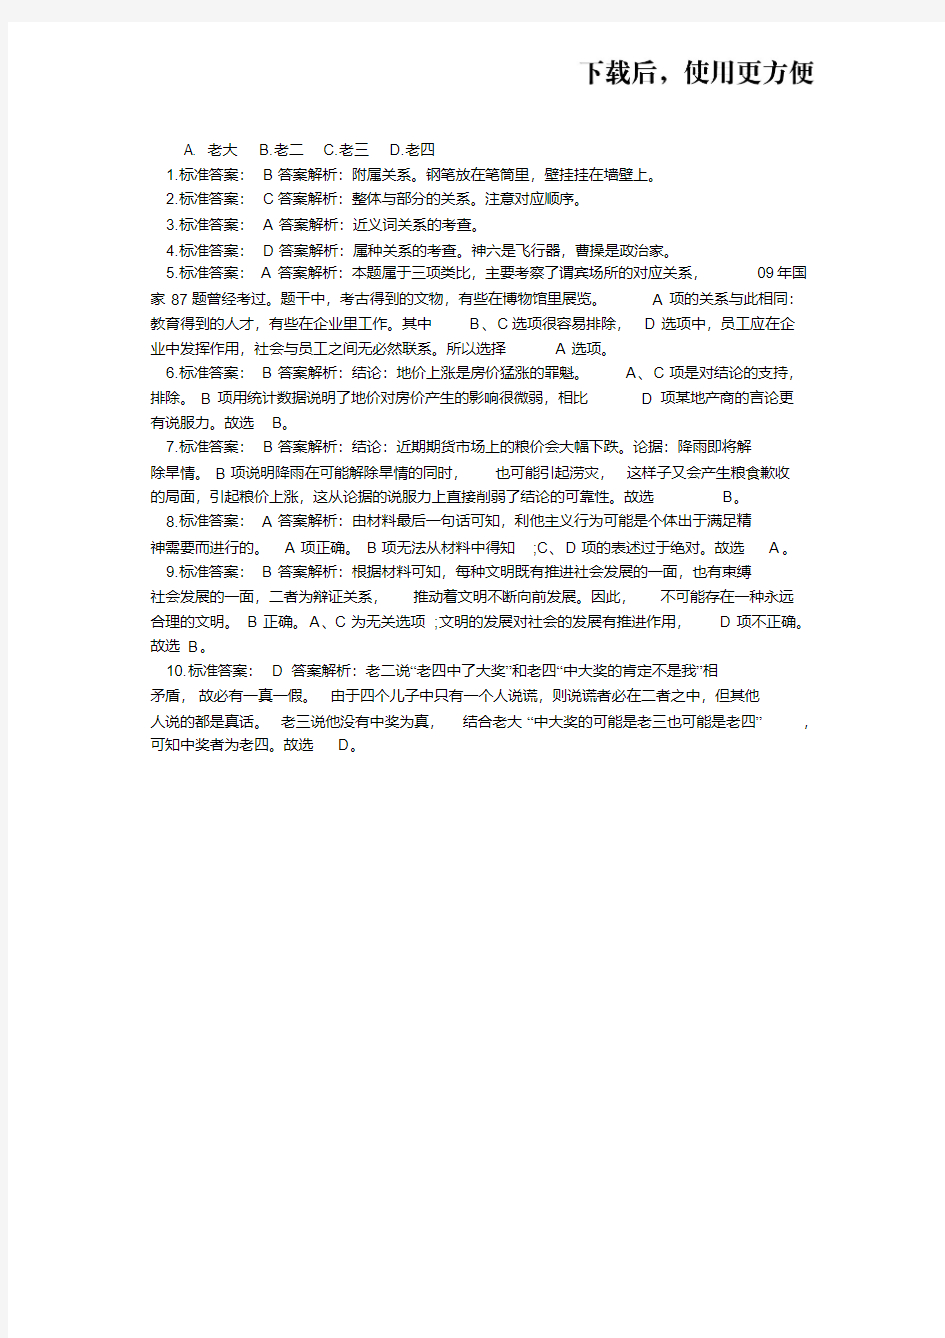 【优质文档】2020年陕西省公务员考试题库及答案